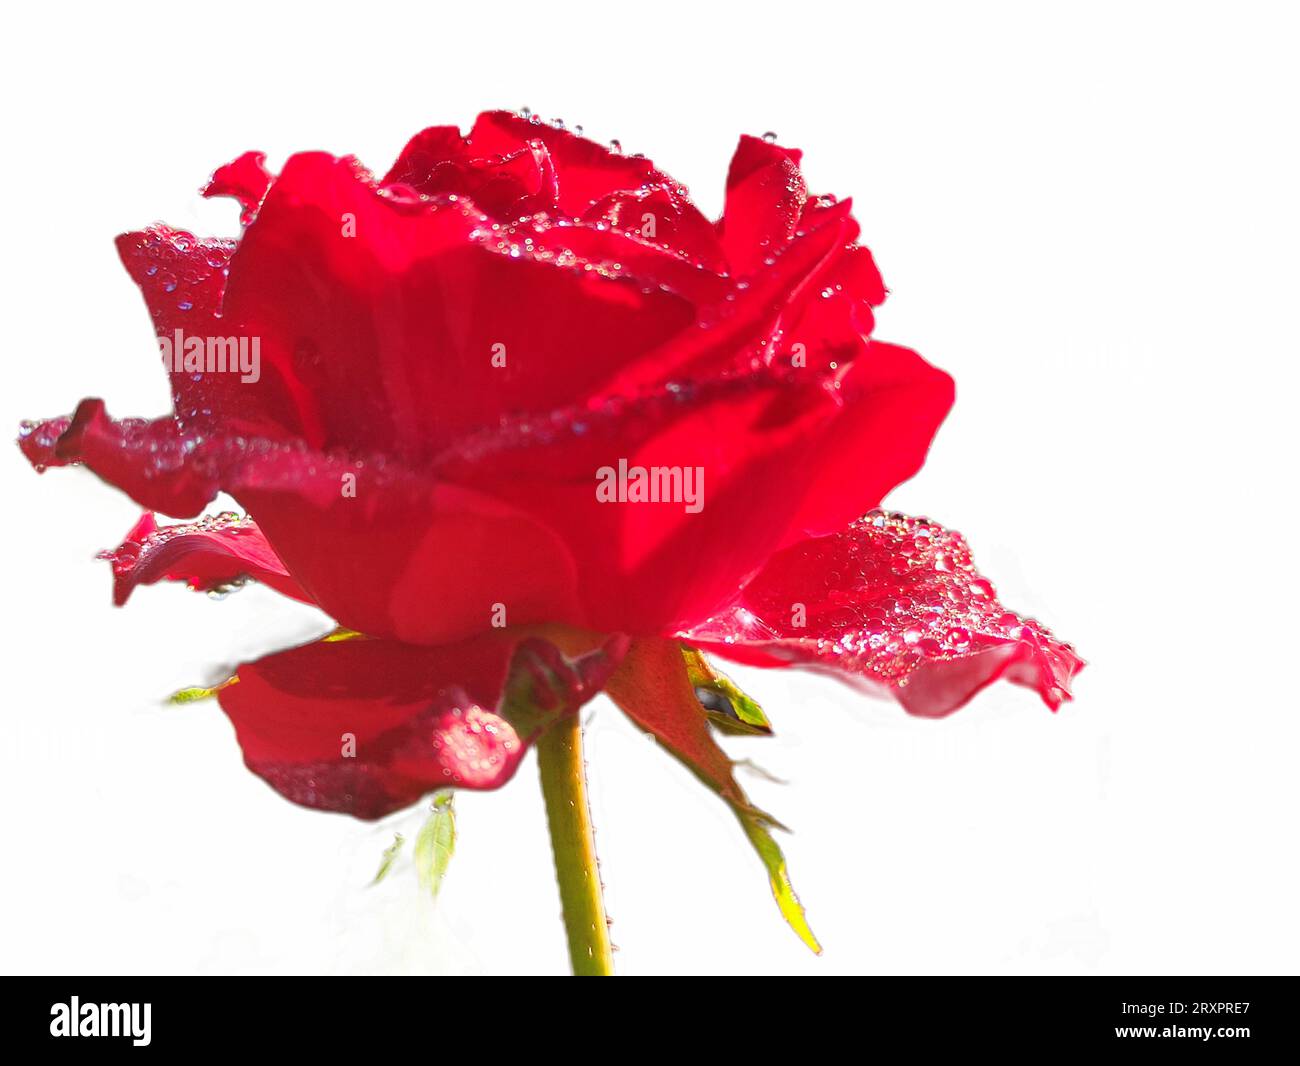 primo piano di una rosa rossa in fiore su sfondo bianco Foto Stock